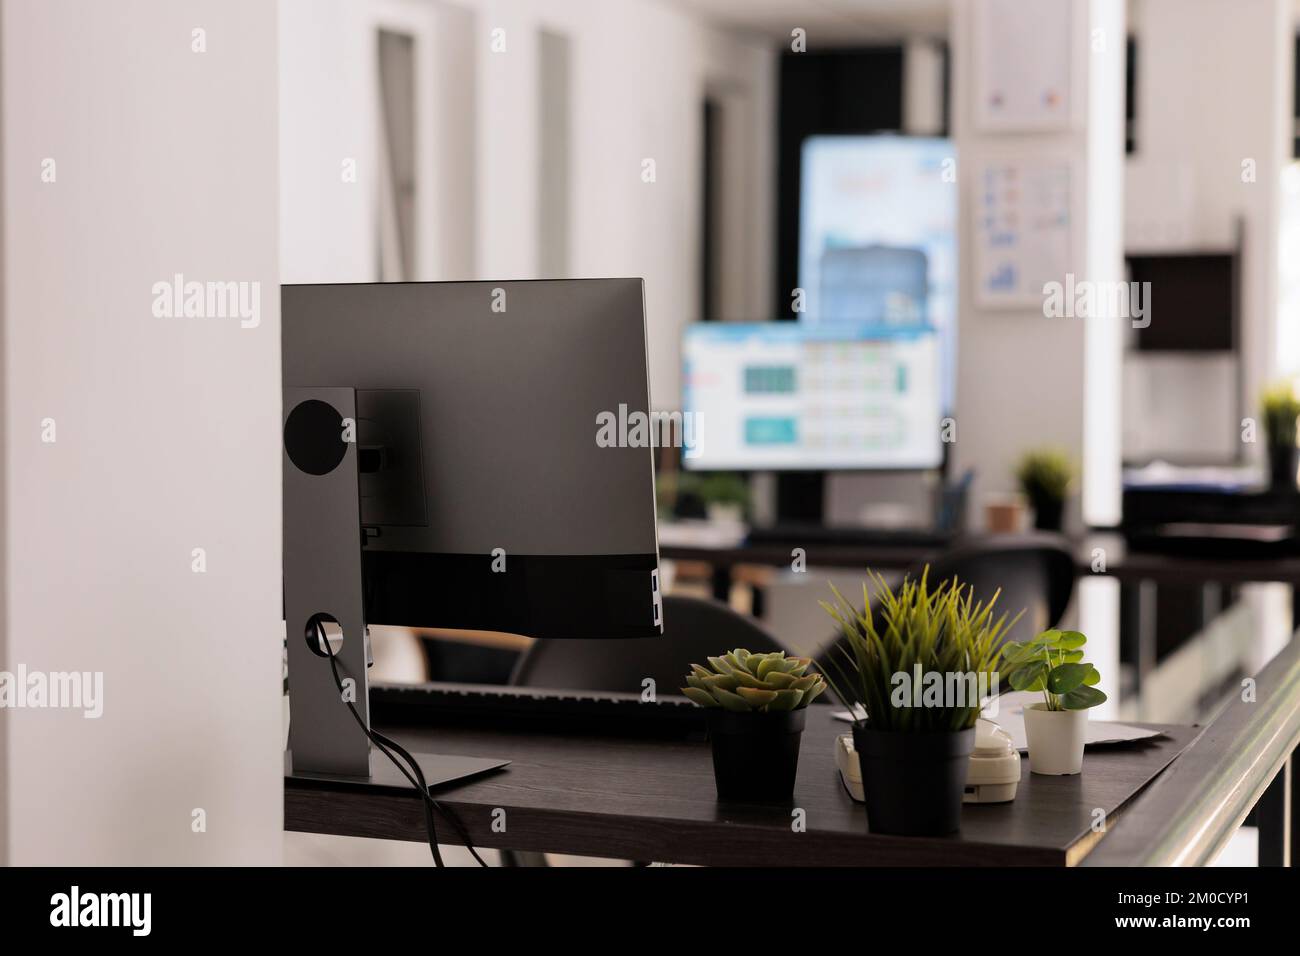 Nahaufnahme von Zimmerpflanzen als Teil der Dekoration eines modernen Gemeinschaftsbüros. Unbemannte Workstations mit Desktop-Computern auf dem Tisch, Konzept für den Arbeitsplatz. Stockfoto